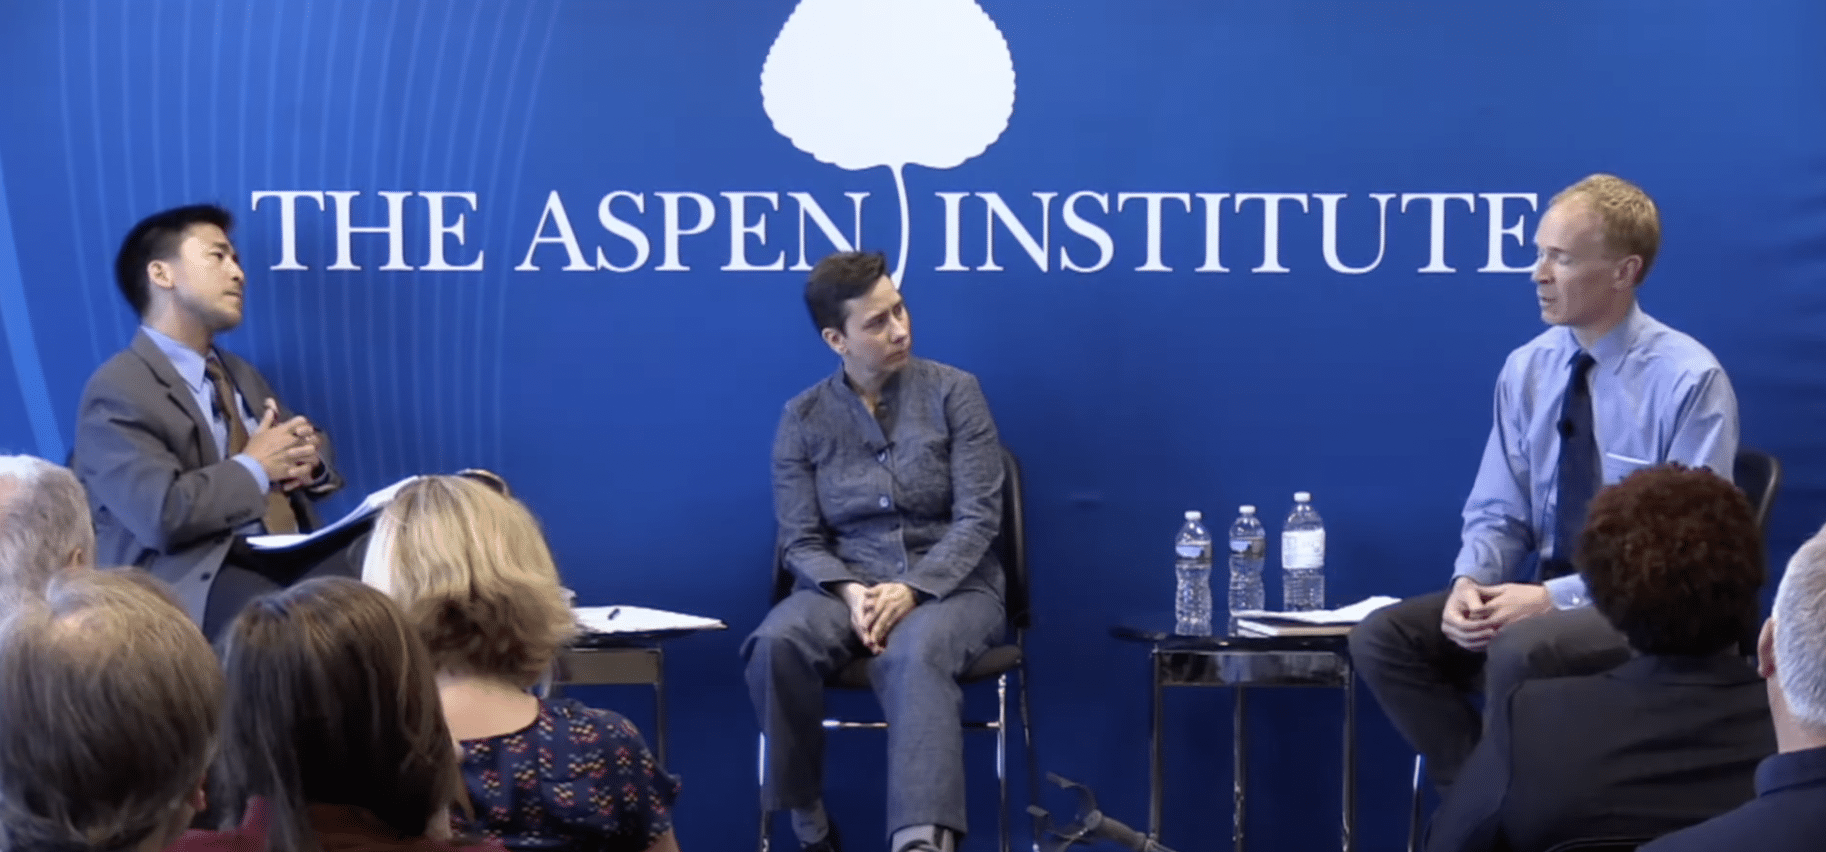 Aspen Institute speaker panel of three speakers